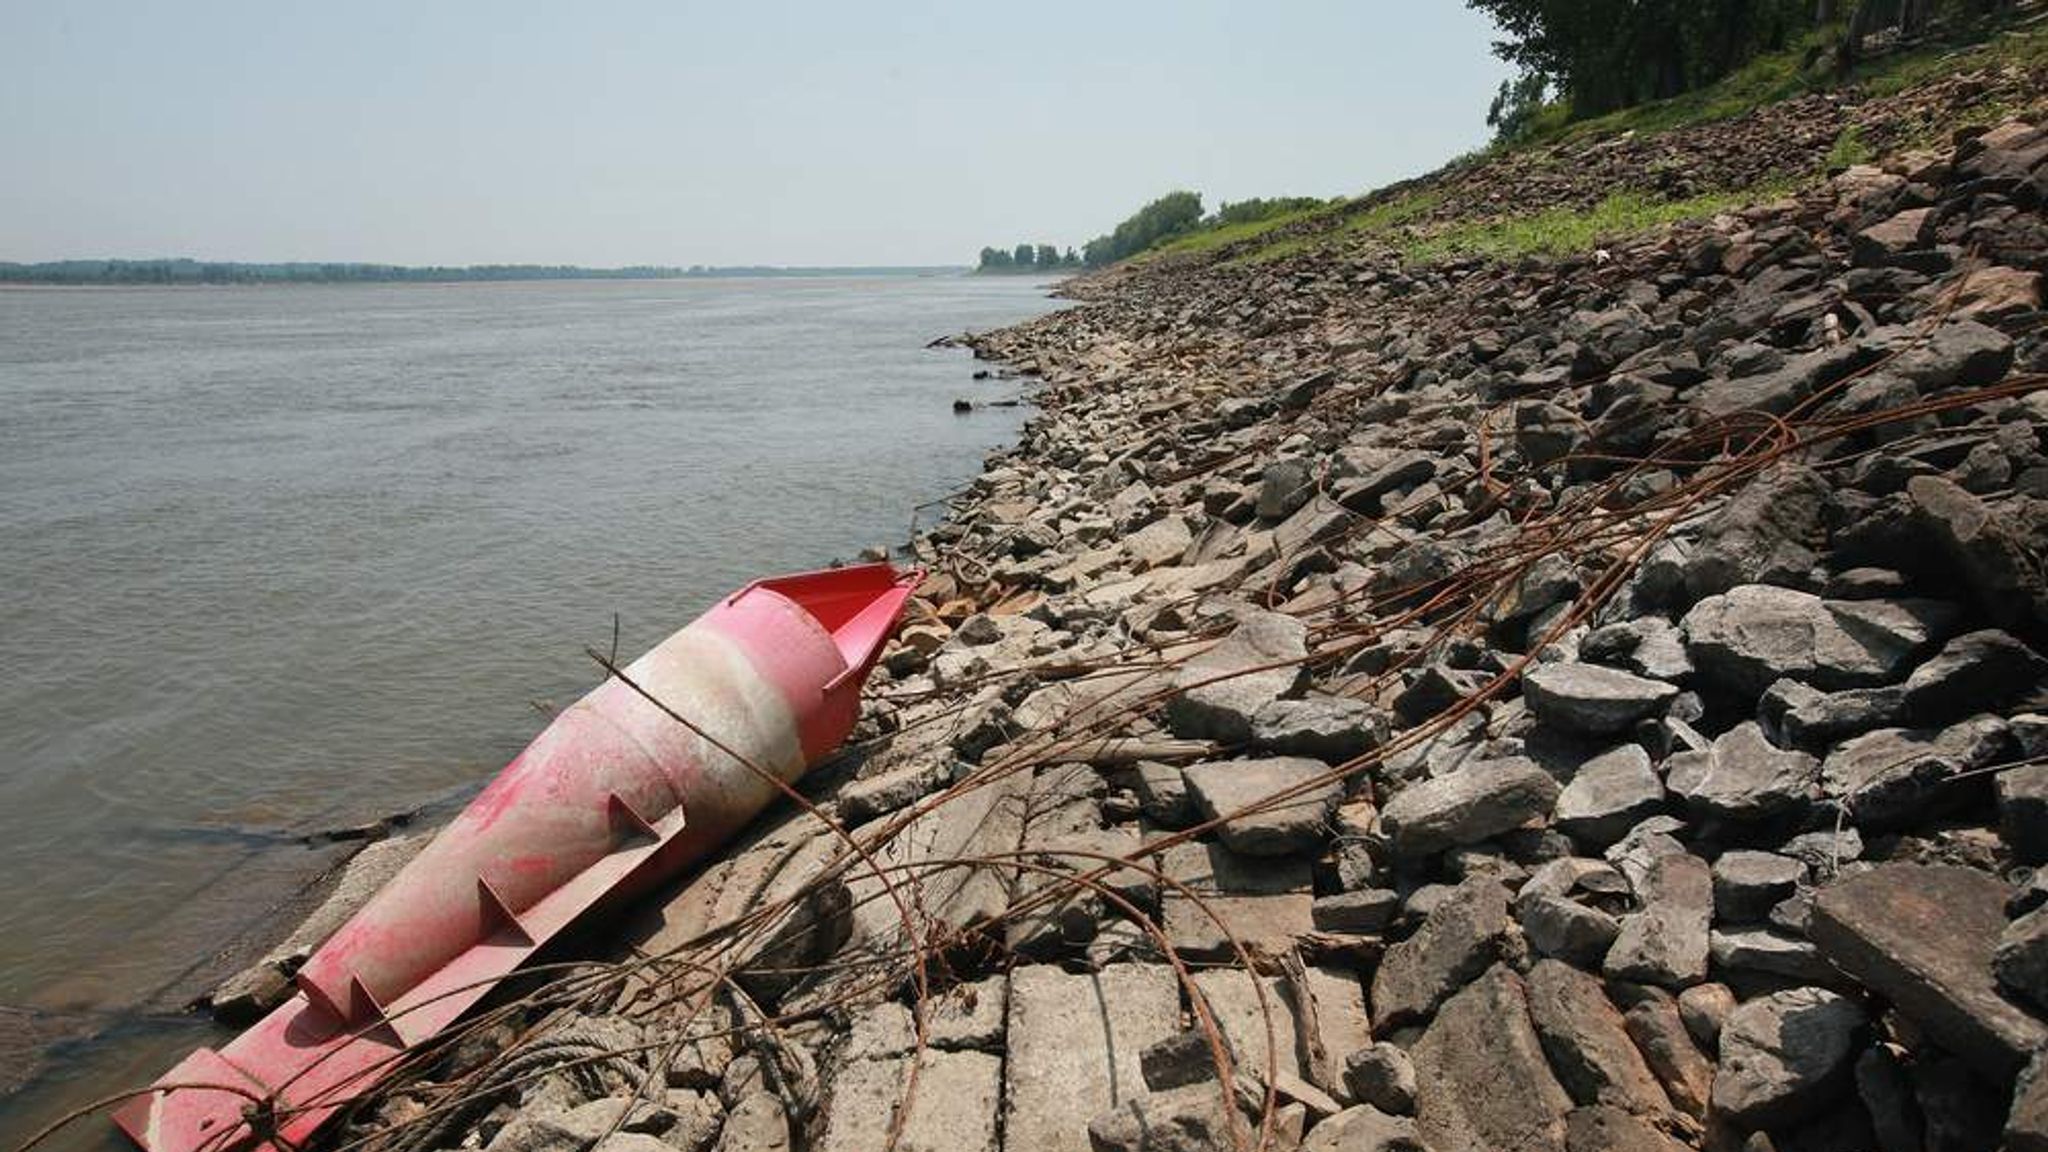 Река миссисипи течет в направлении. Река Миссисипи загрязнение. Засуха на Миссисипи. Экологические проблемы реки Миссисипи. Dead Rivers about HPP in China.